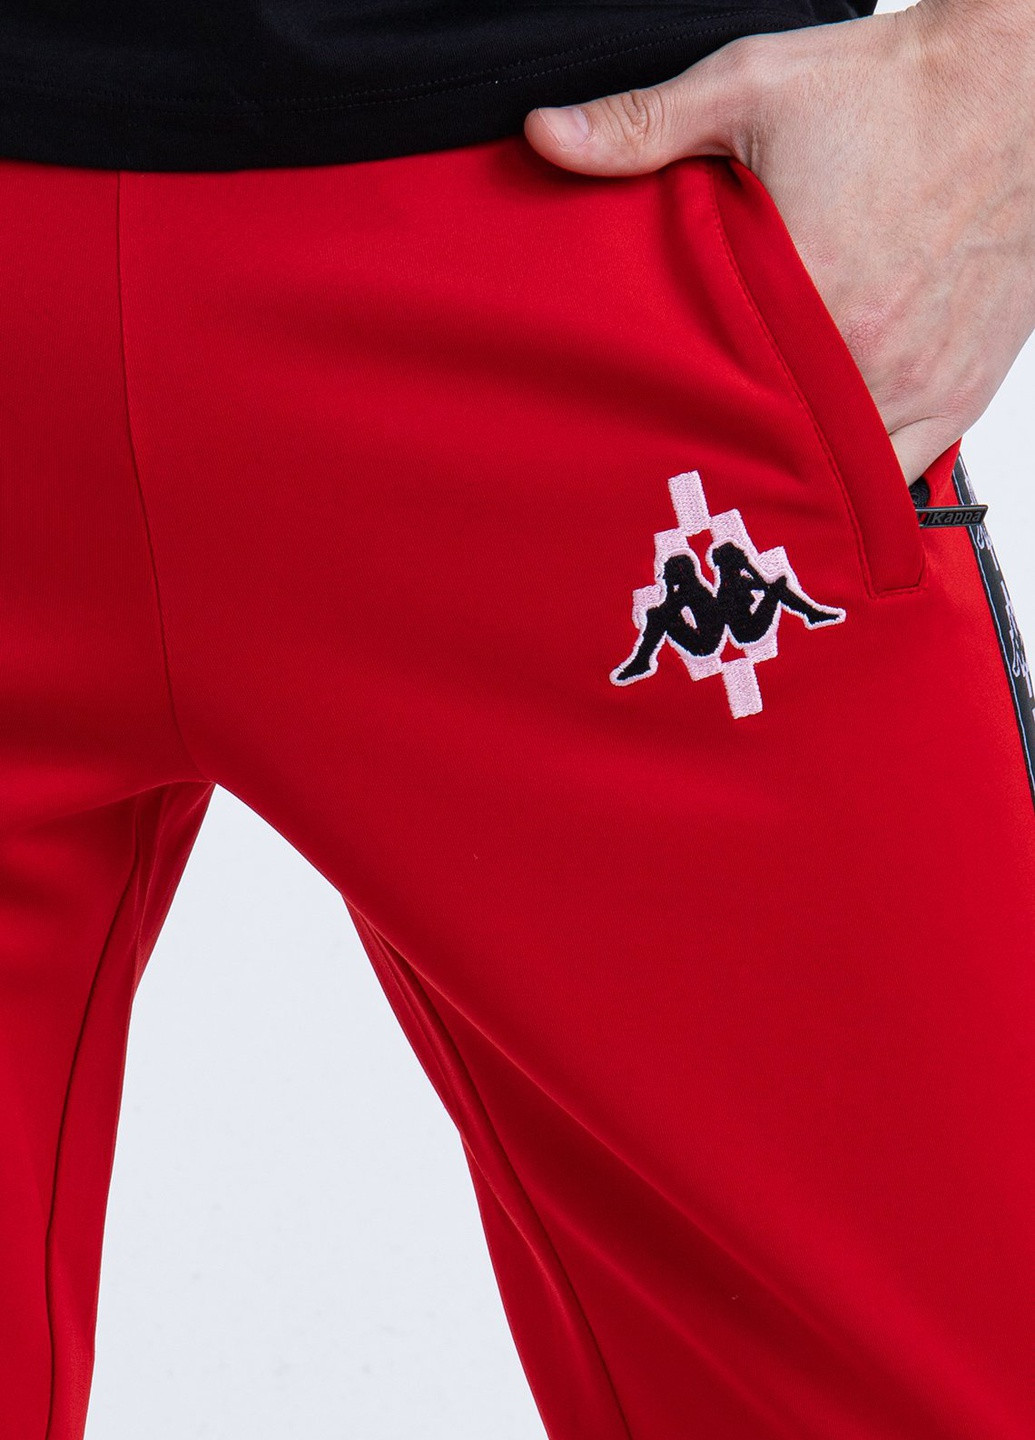 Червоні спортивні штани з лампасами Marcelo Burlon (228133370)